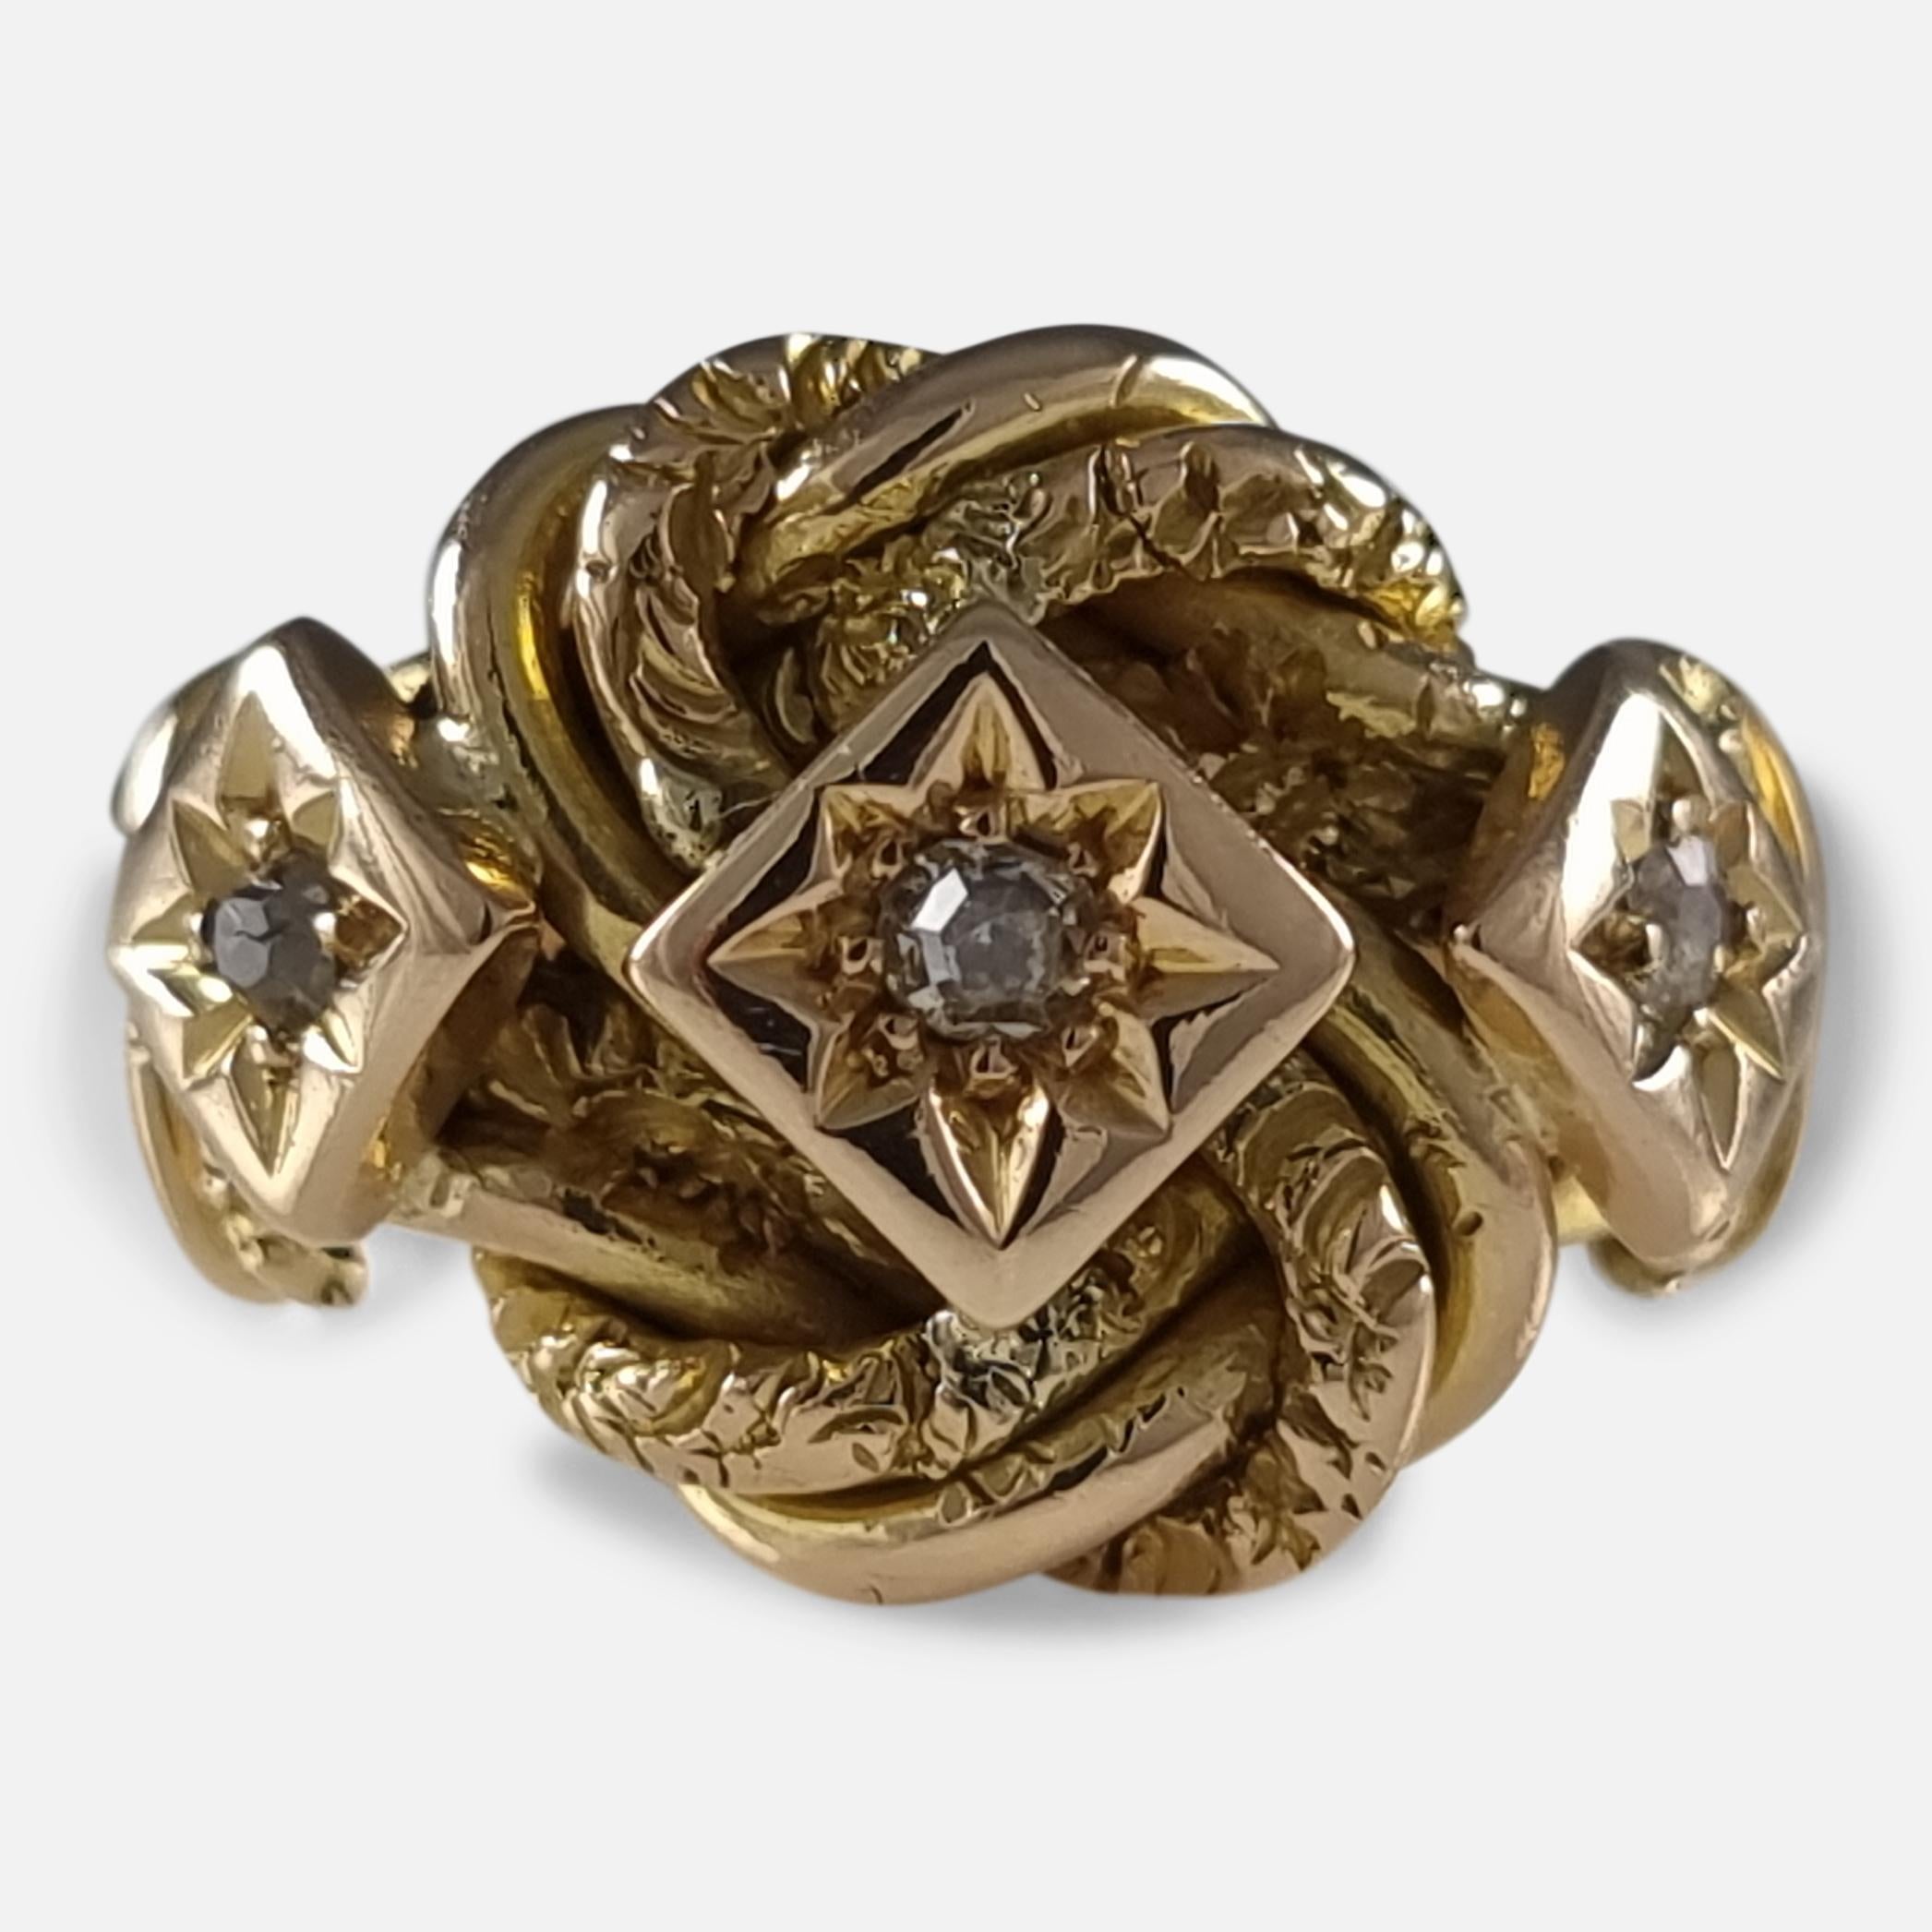 Ein Ring aus 18 Karat Gelbgold und Diamanten mit Knoten. Der Ring ist mit drei abgestuften Altschliff-Diamanten in Sternfassung auf einer gravierten Knotenfassung mit geriffelten Schultern und glattem Band besetzt.

Der Ring ist im Vereinigten